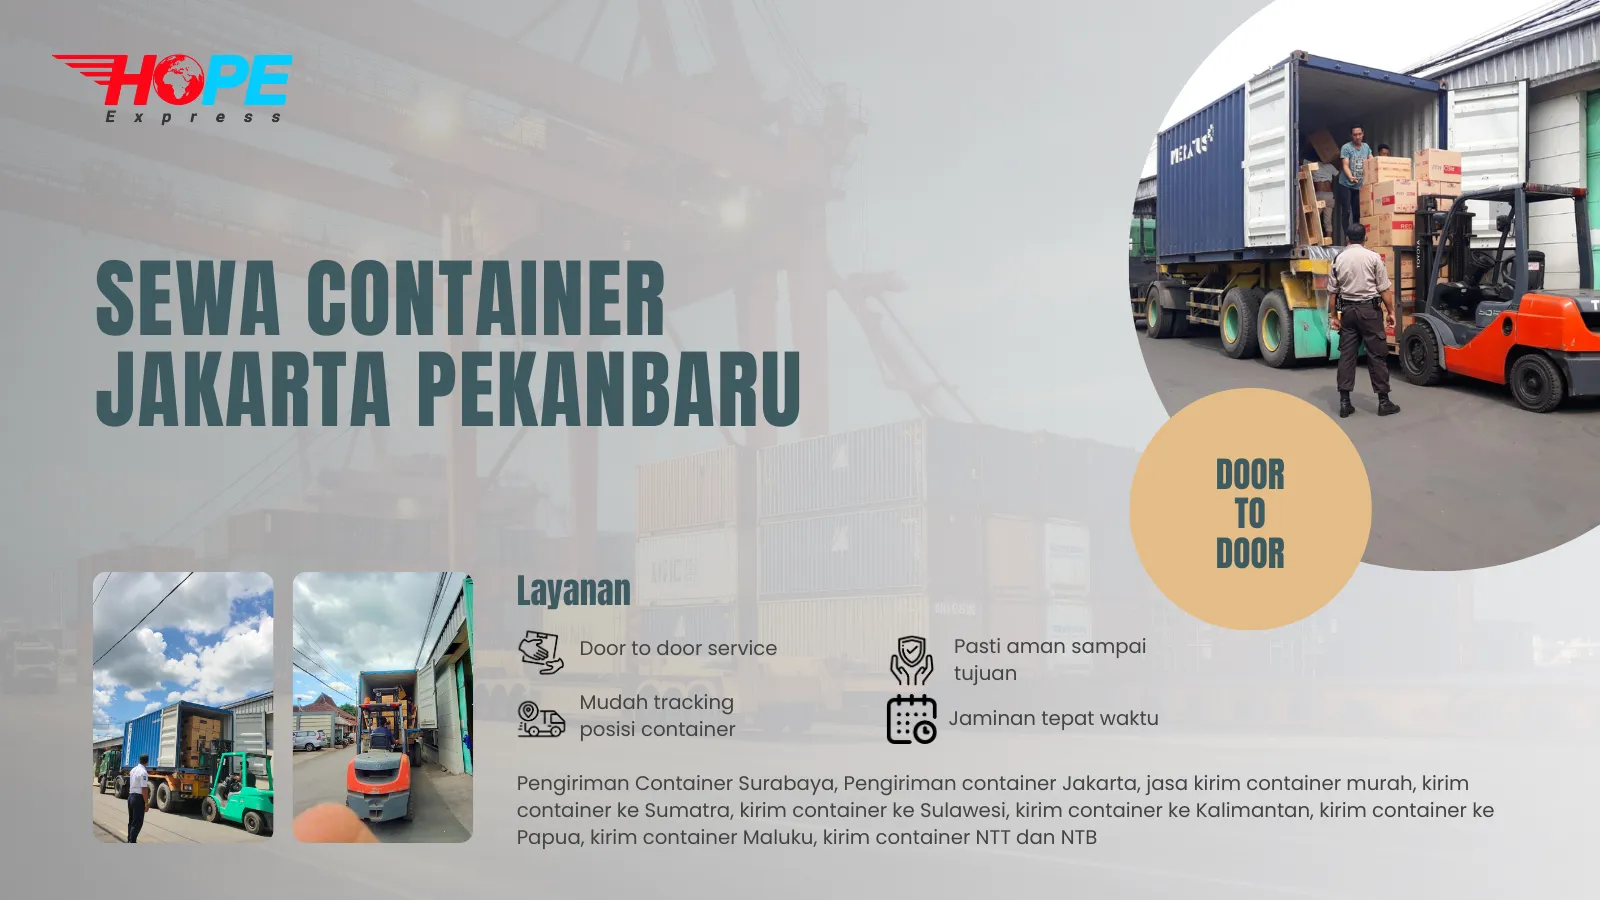 Sewa Container Jakarta Pekanbaru